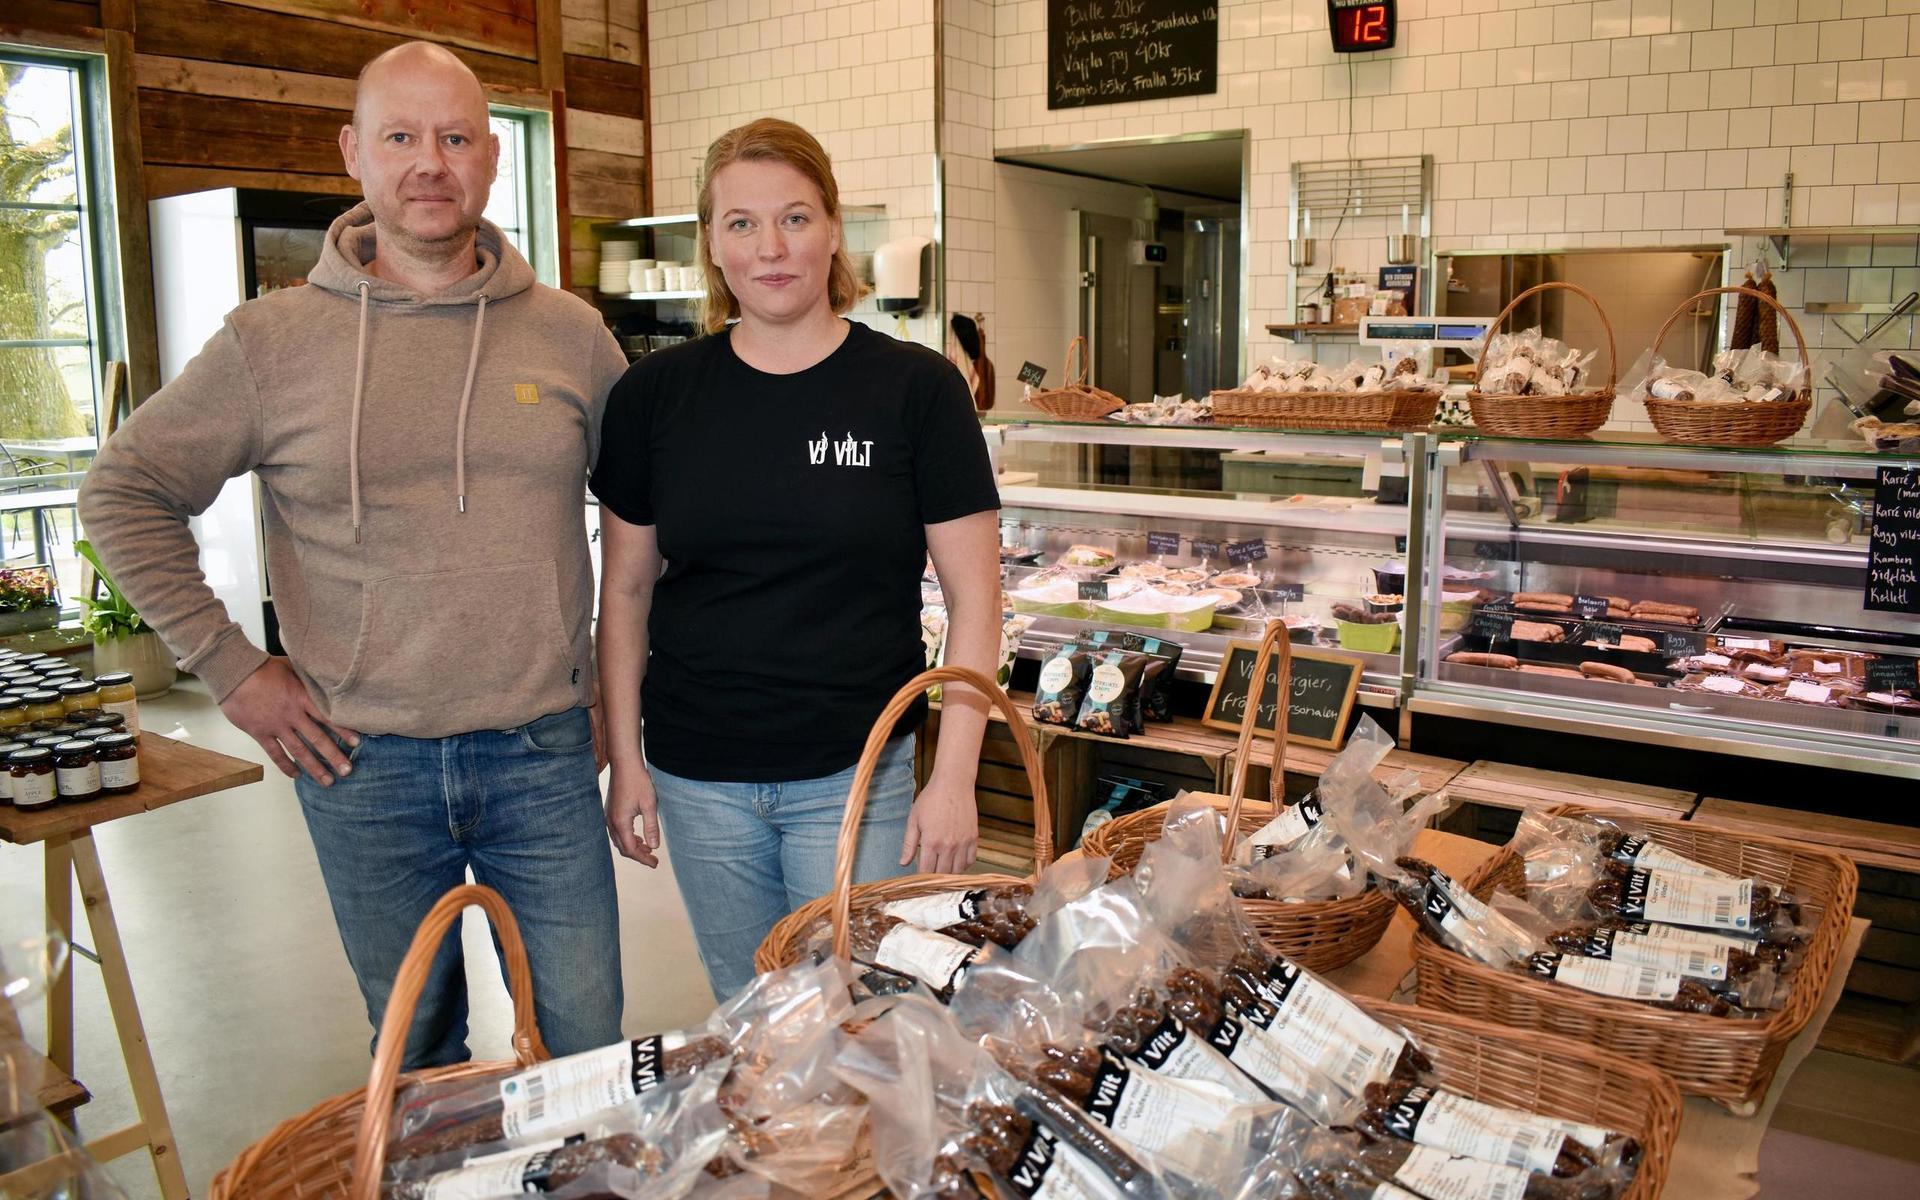 Det företagsamma paret Jonas Carlsson och Caroline Engvall har öppnat gårdsbutiken VJ Vilt under våren.